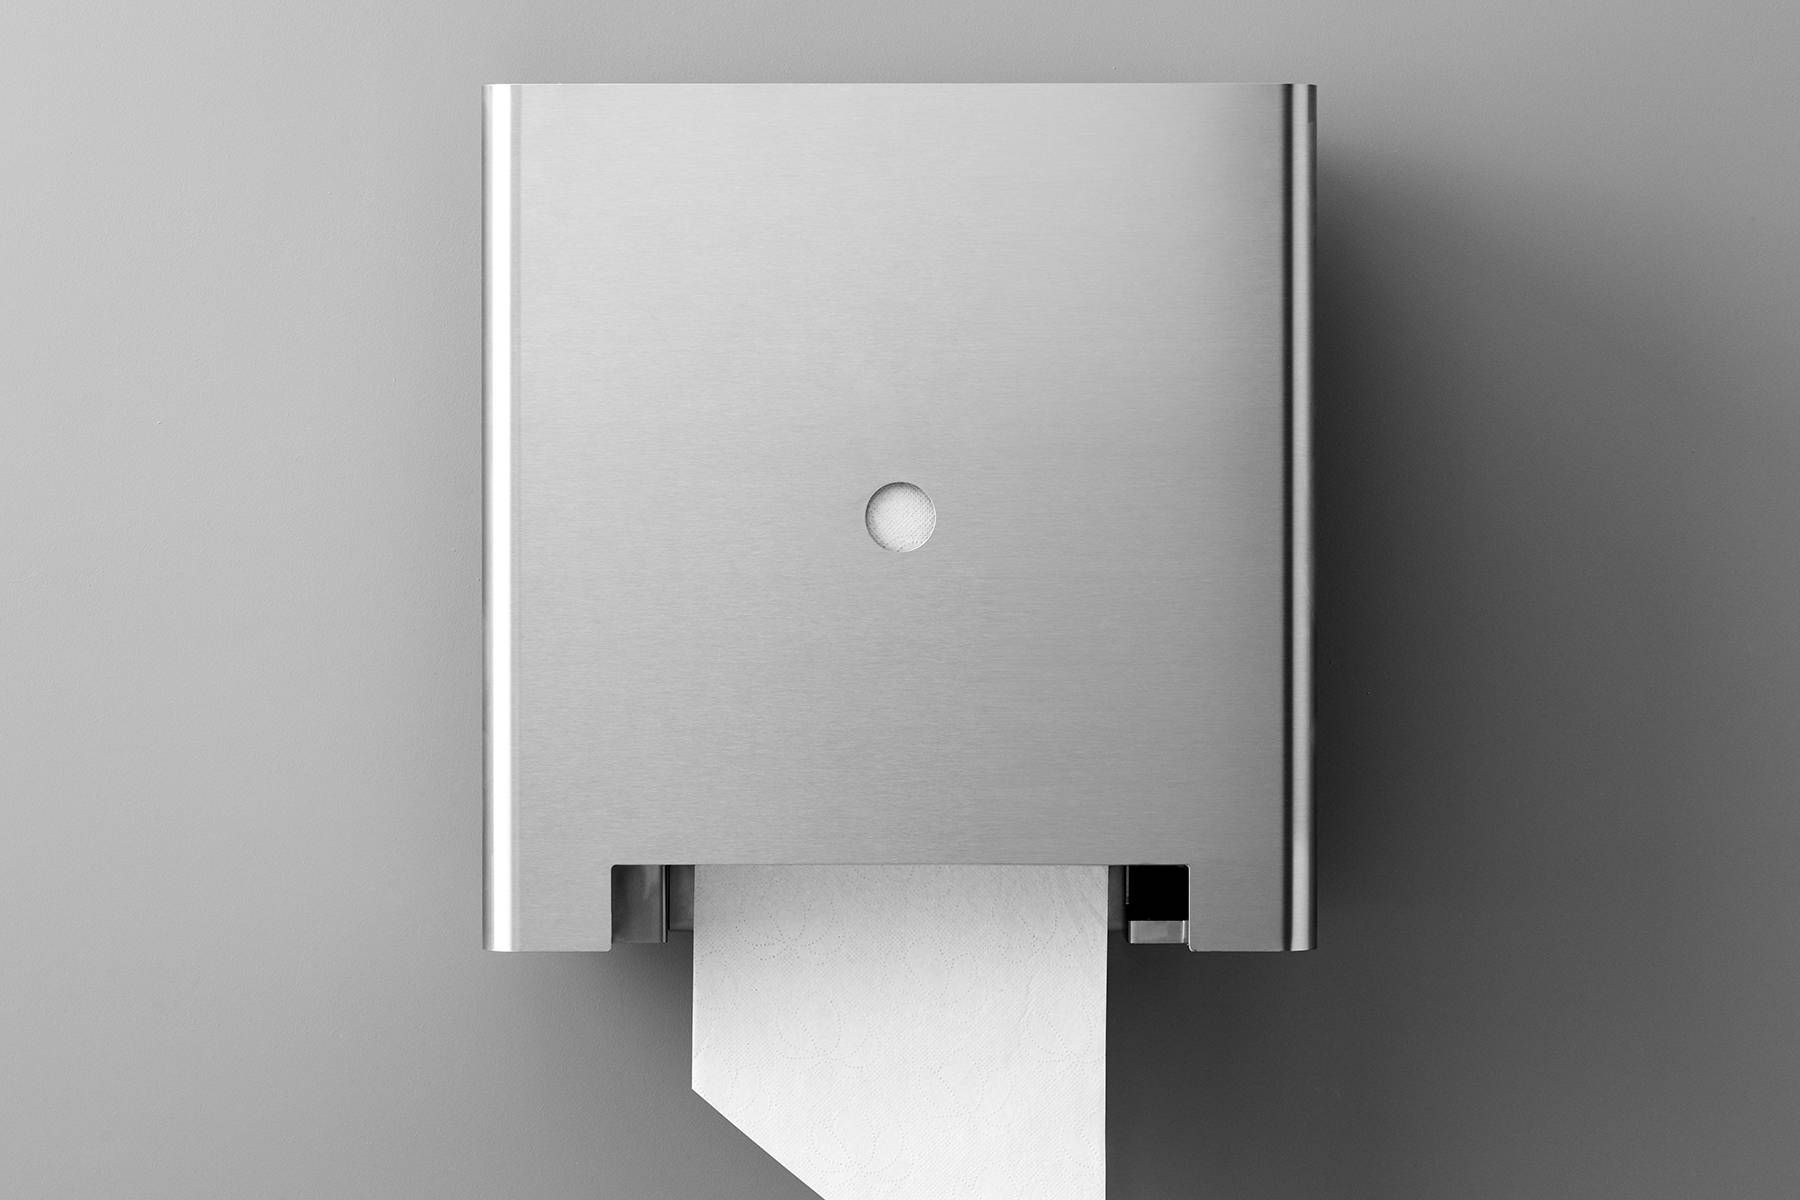 Touchless paper roll dispenser, 200 mm diameter roll - Touchless paper roll dispenser